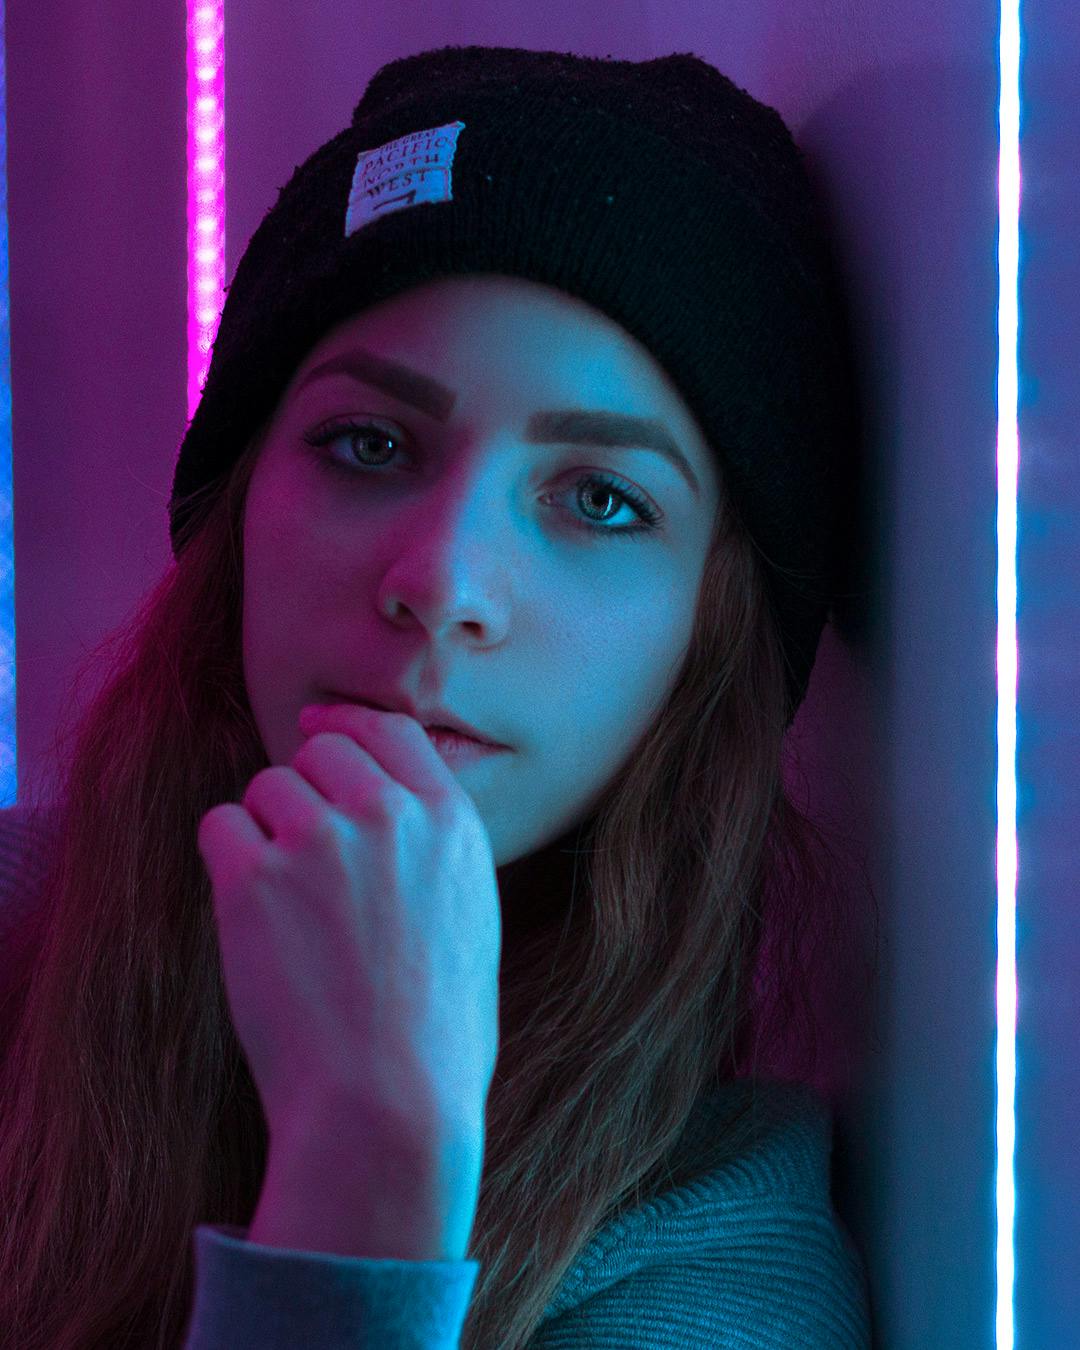 Girl in between neon lights in a portrait photo.